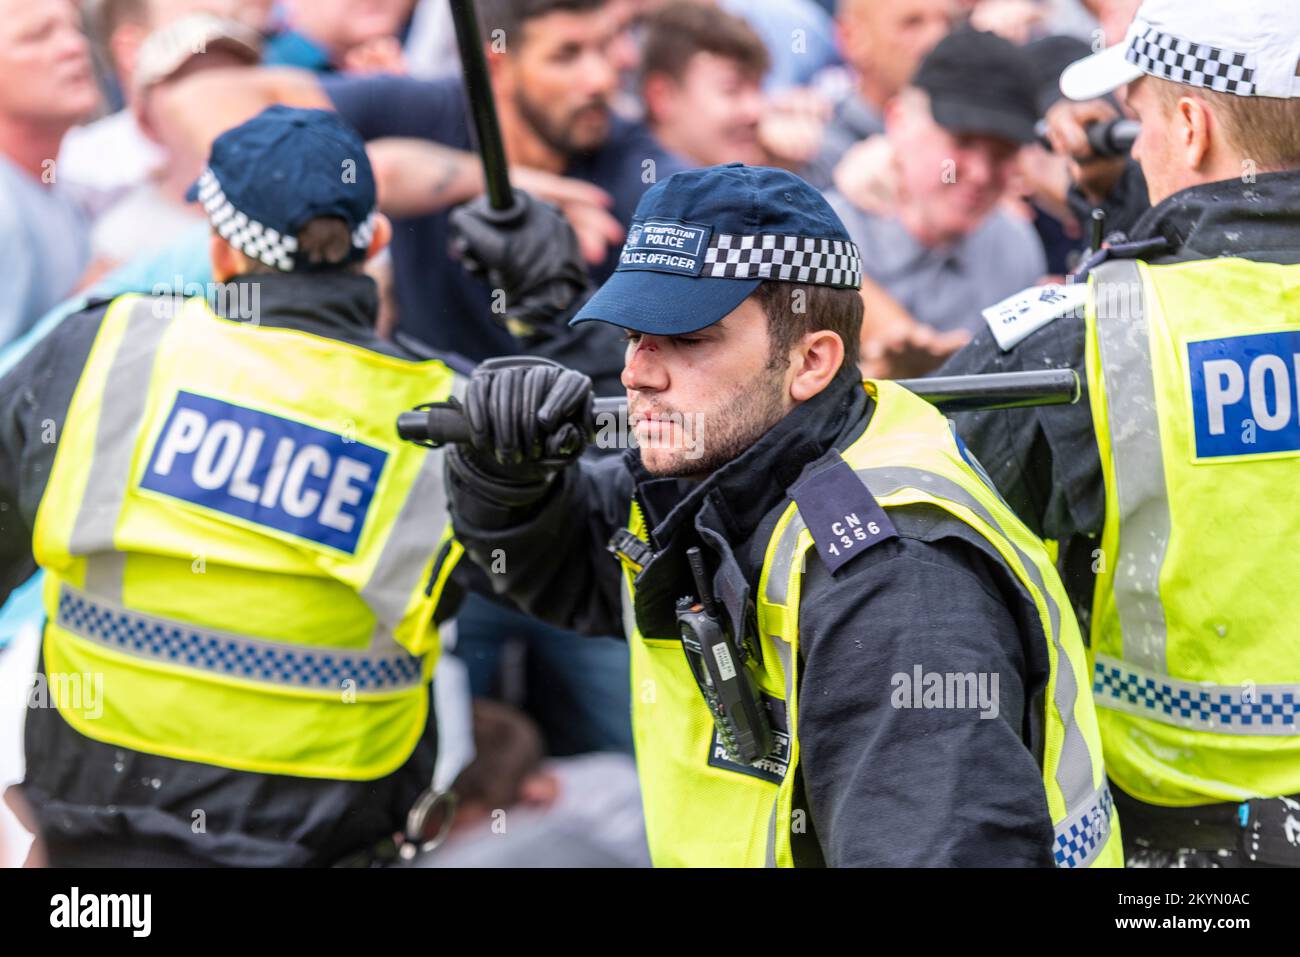 Anhänger von Tommy Robinson wie die EDL protestierten in London und demonstrierten für seine Freilassung nach der Verhaftung. Verletzte Polizistin mit blutiger Nase Stockfoto